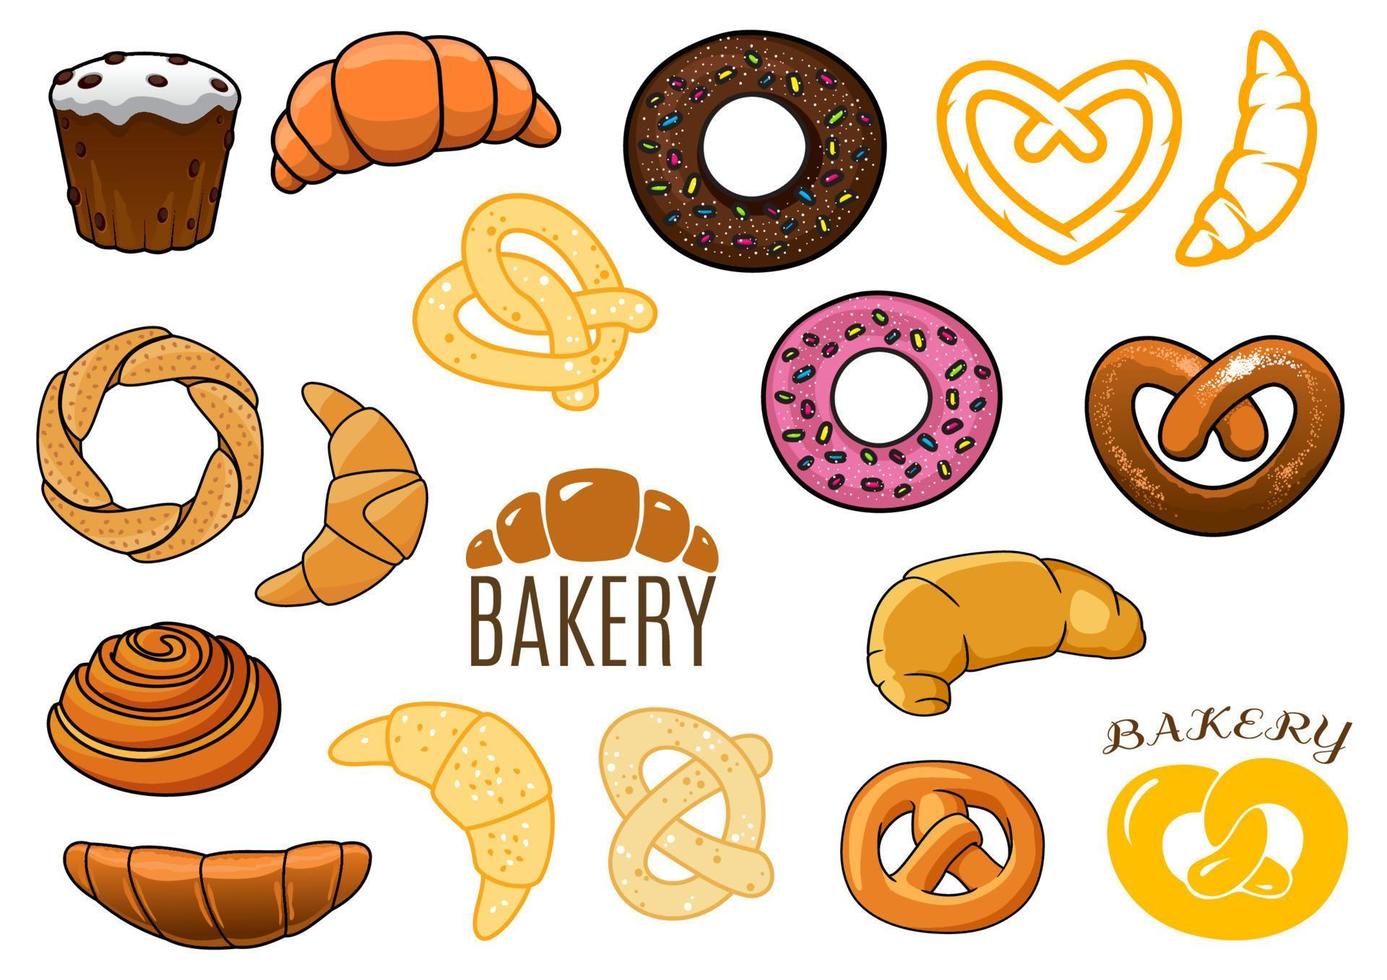 bollos, pasteles, croissants, donuts, pretzels delineados y caricaturizados vector